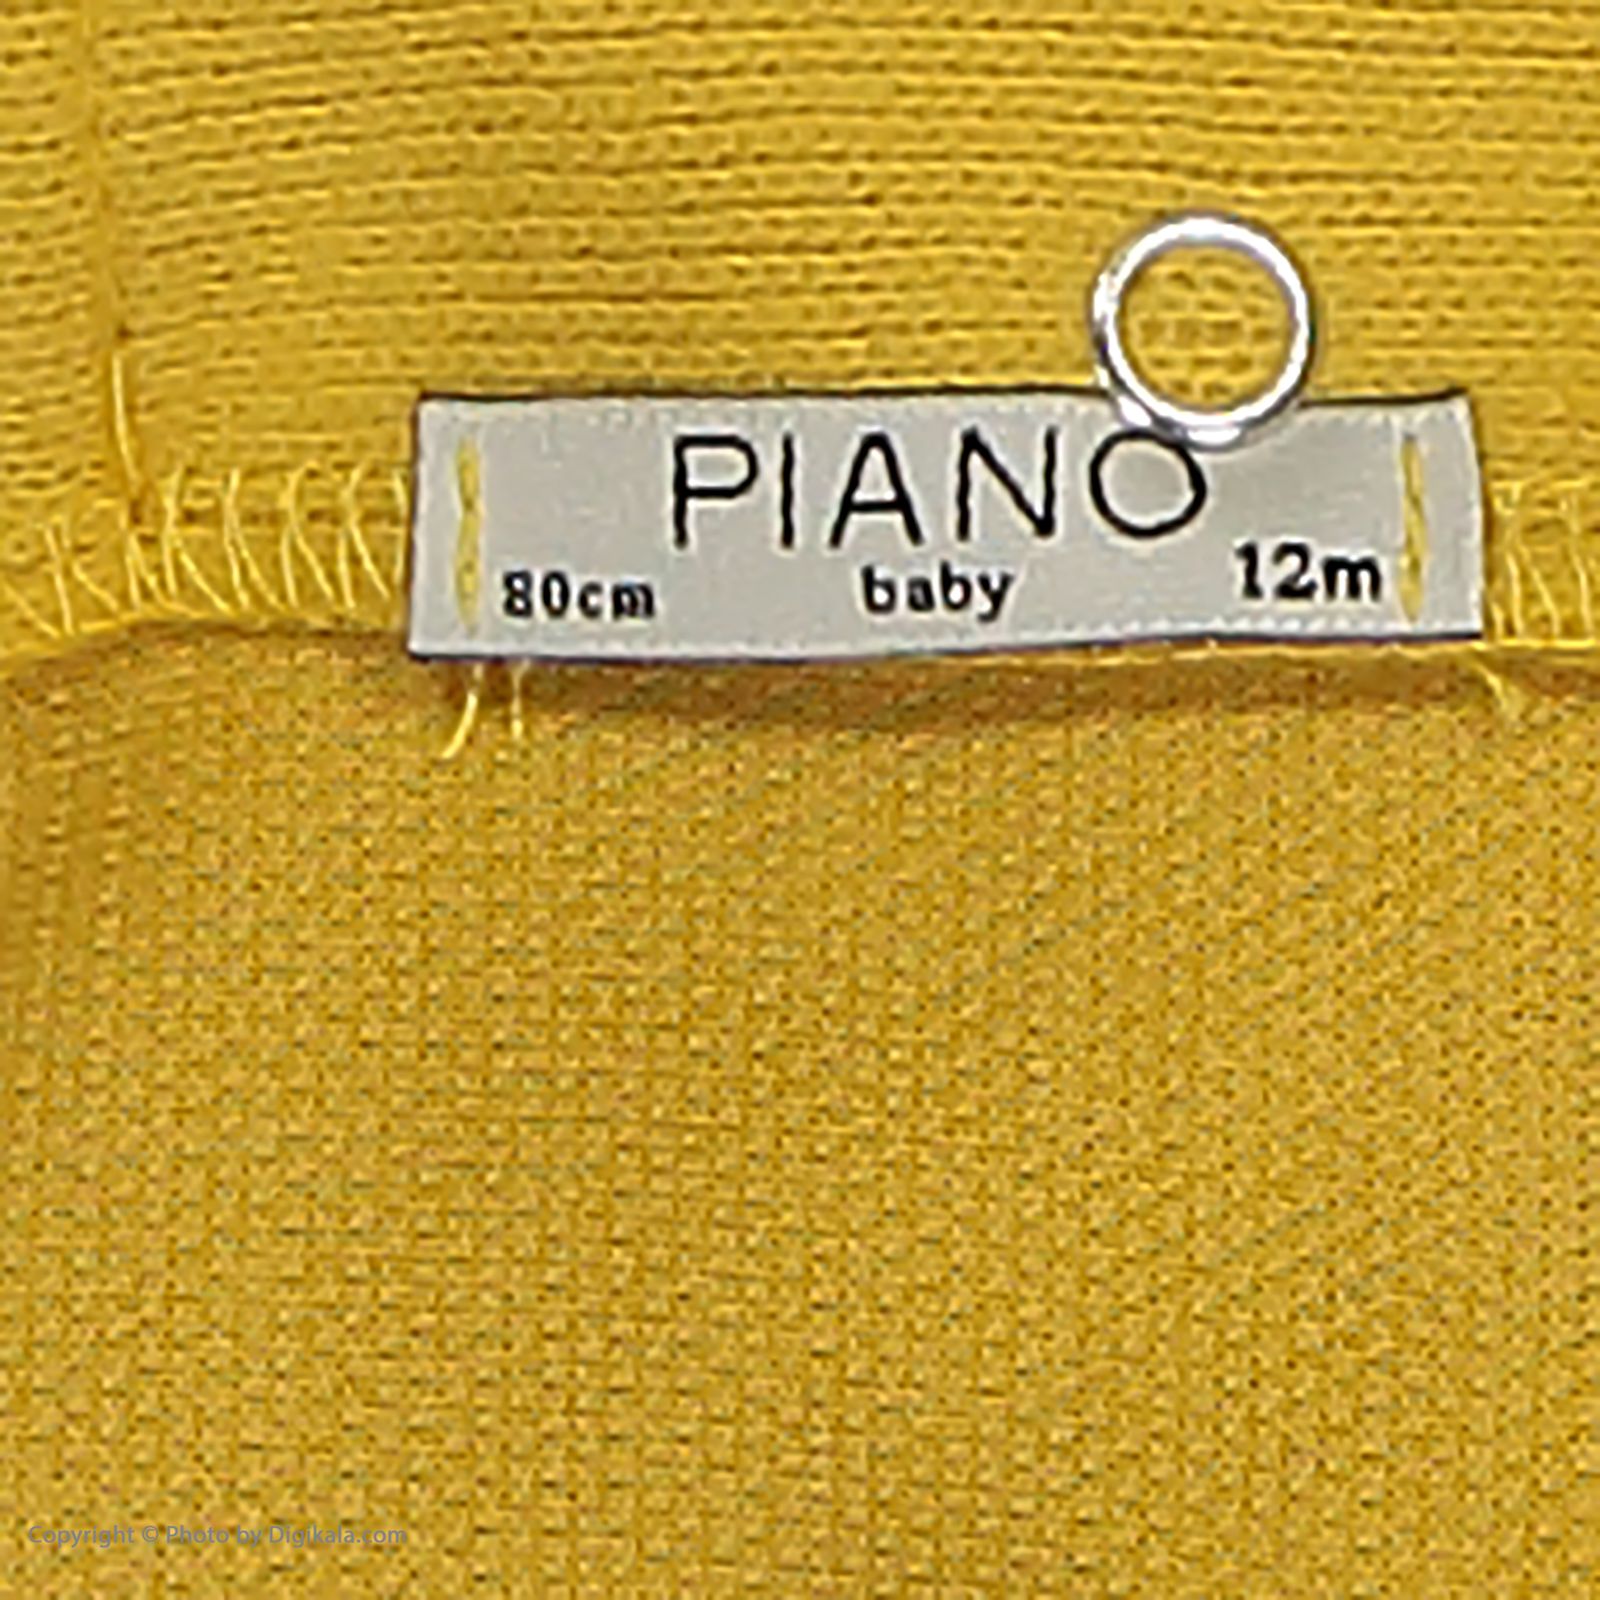 سویشرت نوزادی پیانو مدل 1009009901736-16 -  - 5